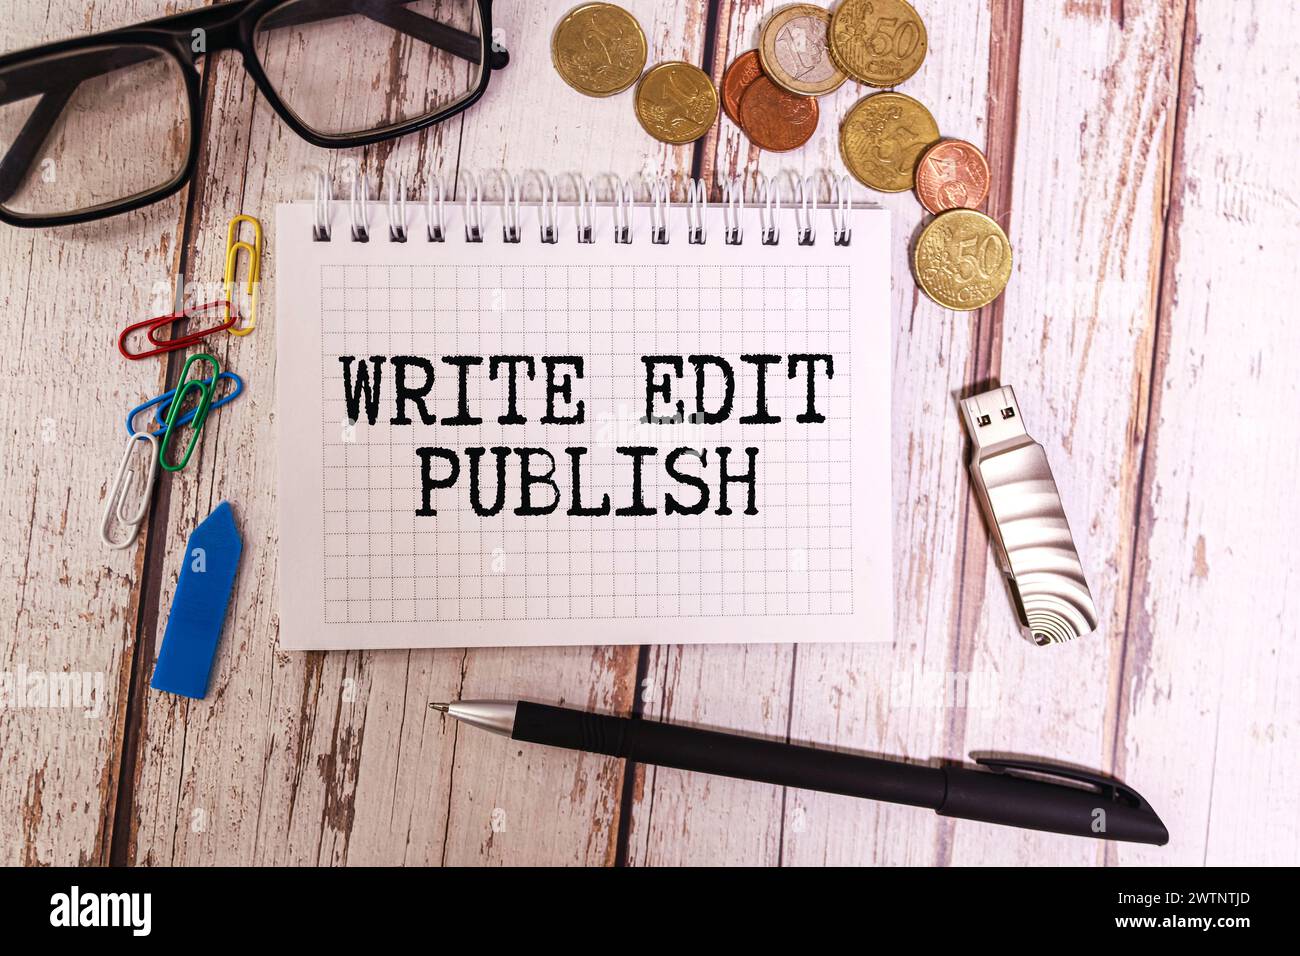 Schreiben Bearbeiten Veröffentlichen, Text auf weißem Notizblock auf farbenfrohem Hintergrund Stockfoto